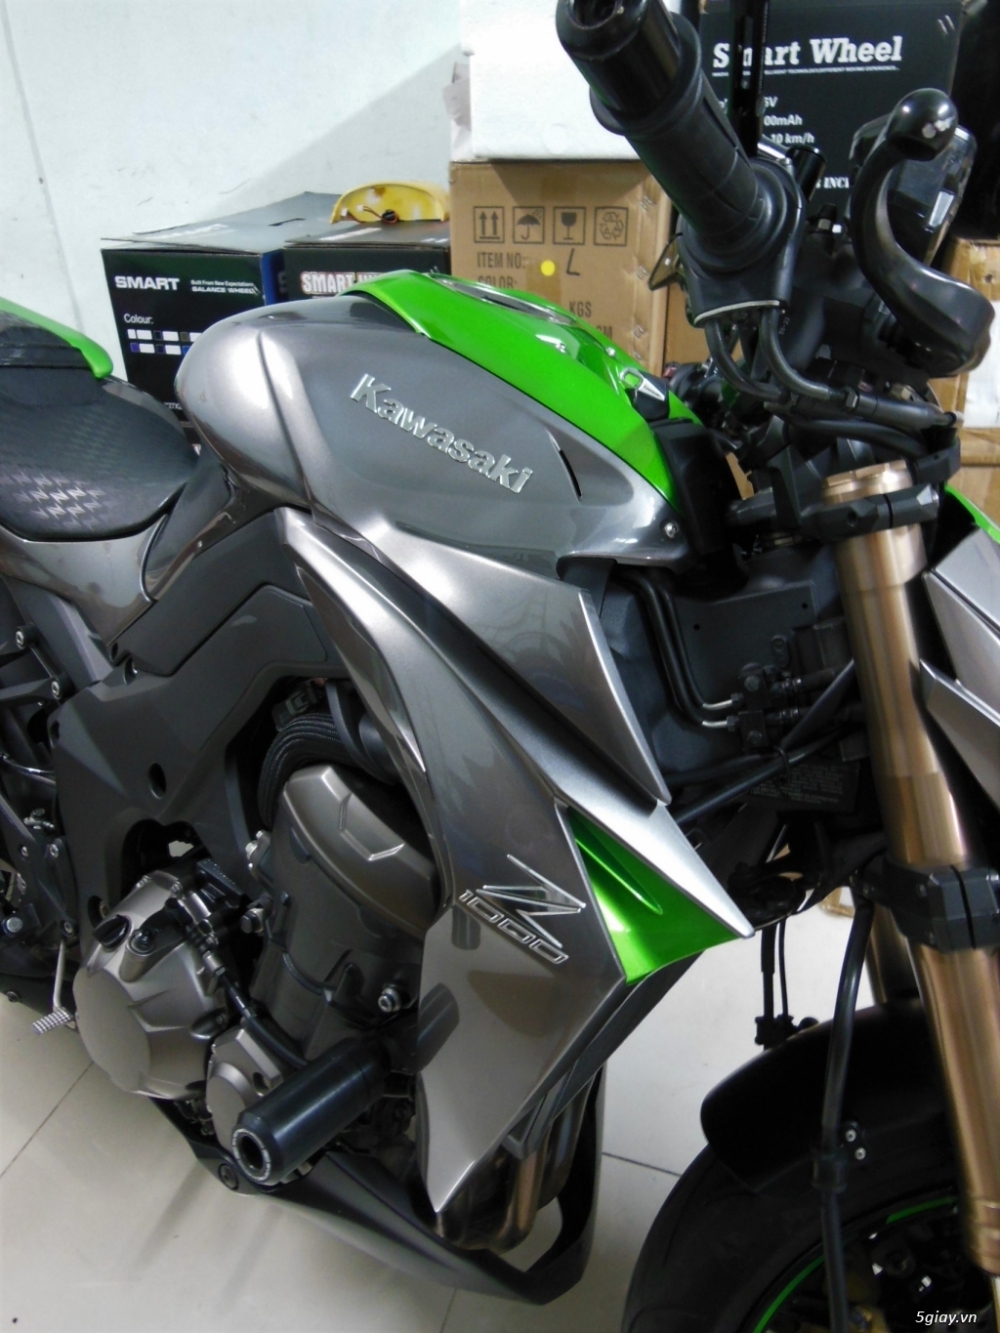 Kawasaki z1000 ODO 1700Km - 2